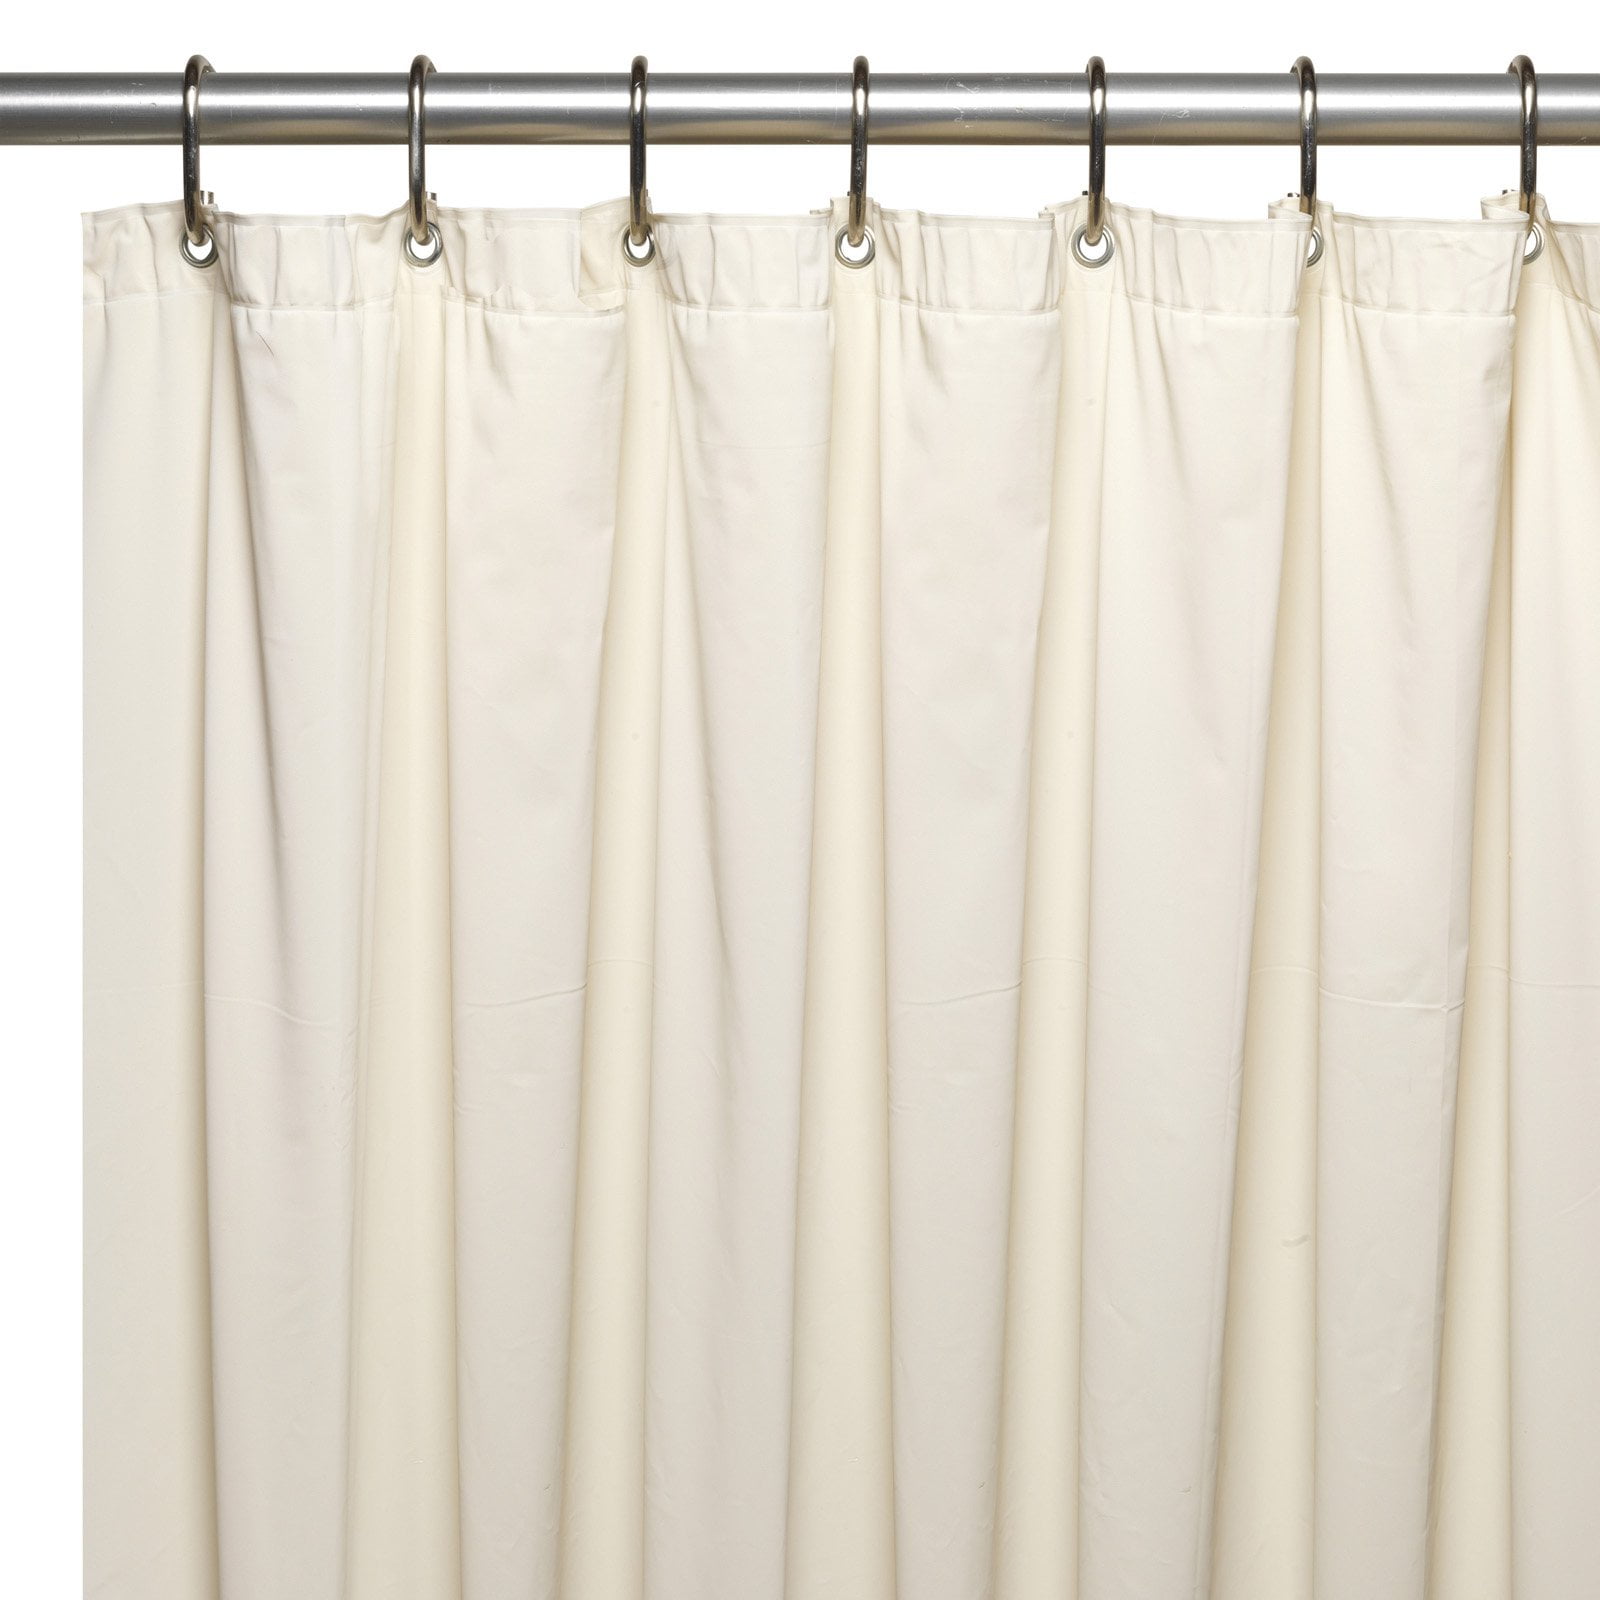 72" Vinyl Shower Curtain Liner Extra Long Mildew Resistant Water Resist new K6U1 